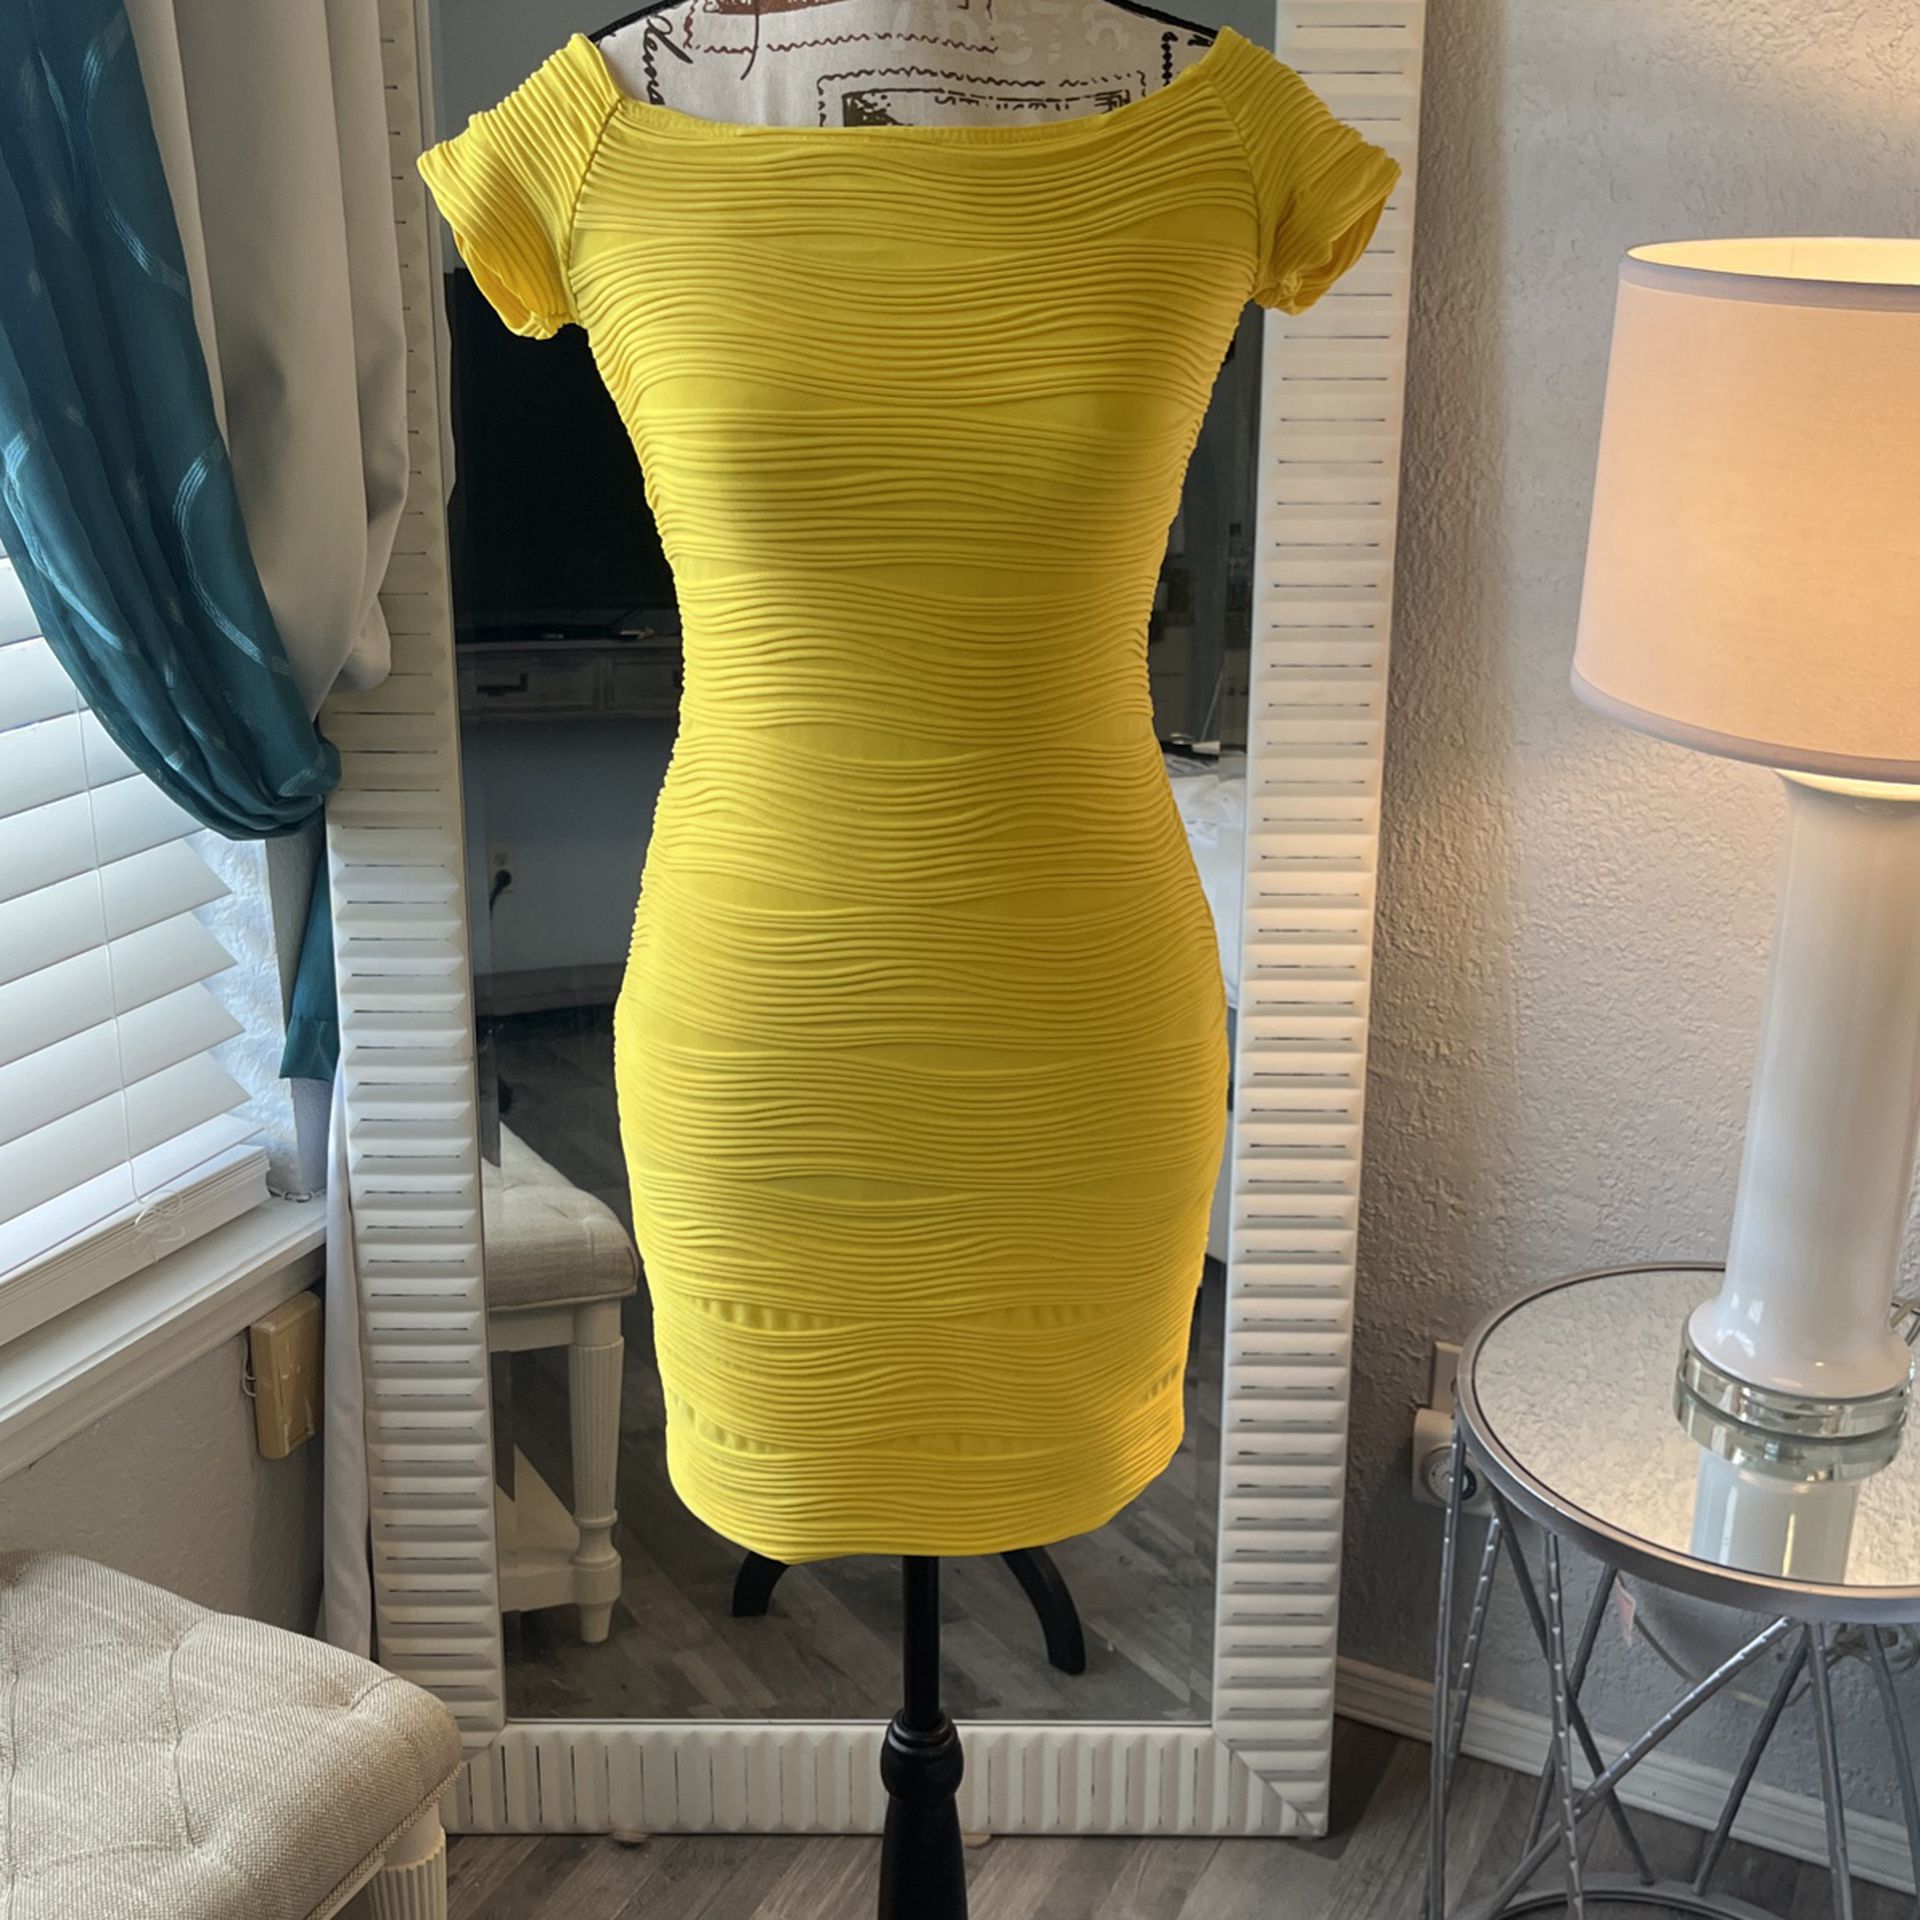 Yellow Dress Size Small $20